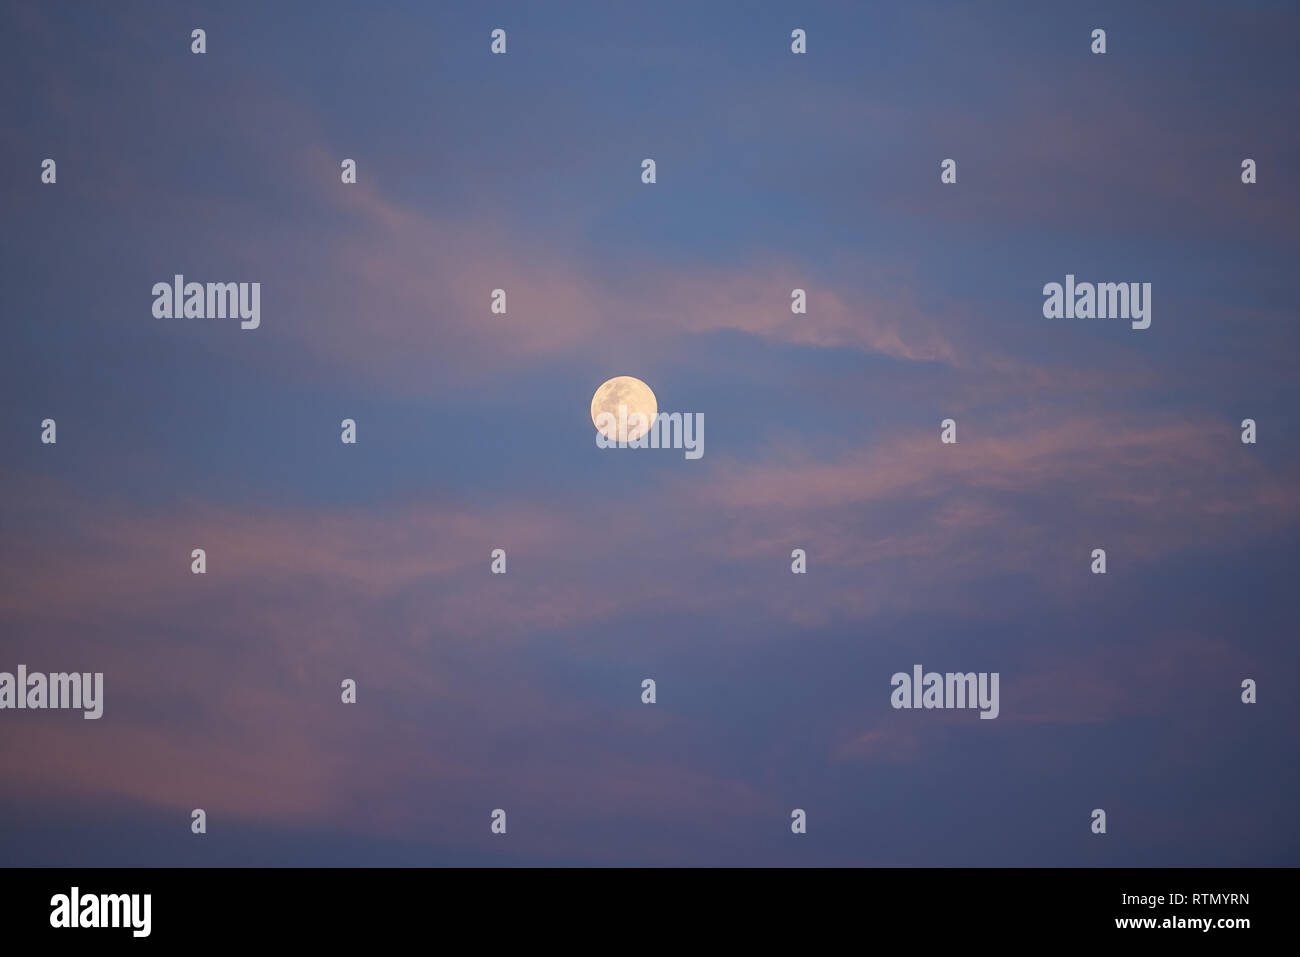 Pleine lune sur coucher de ciel. Skyscape bleu avec nuages rose Banque D'Images